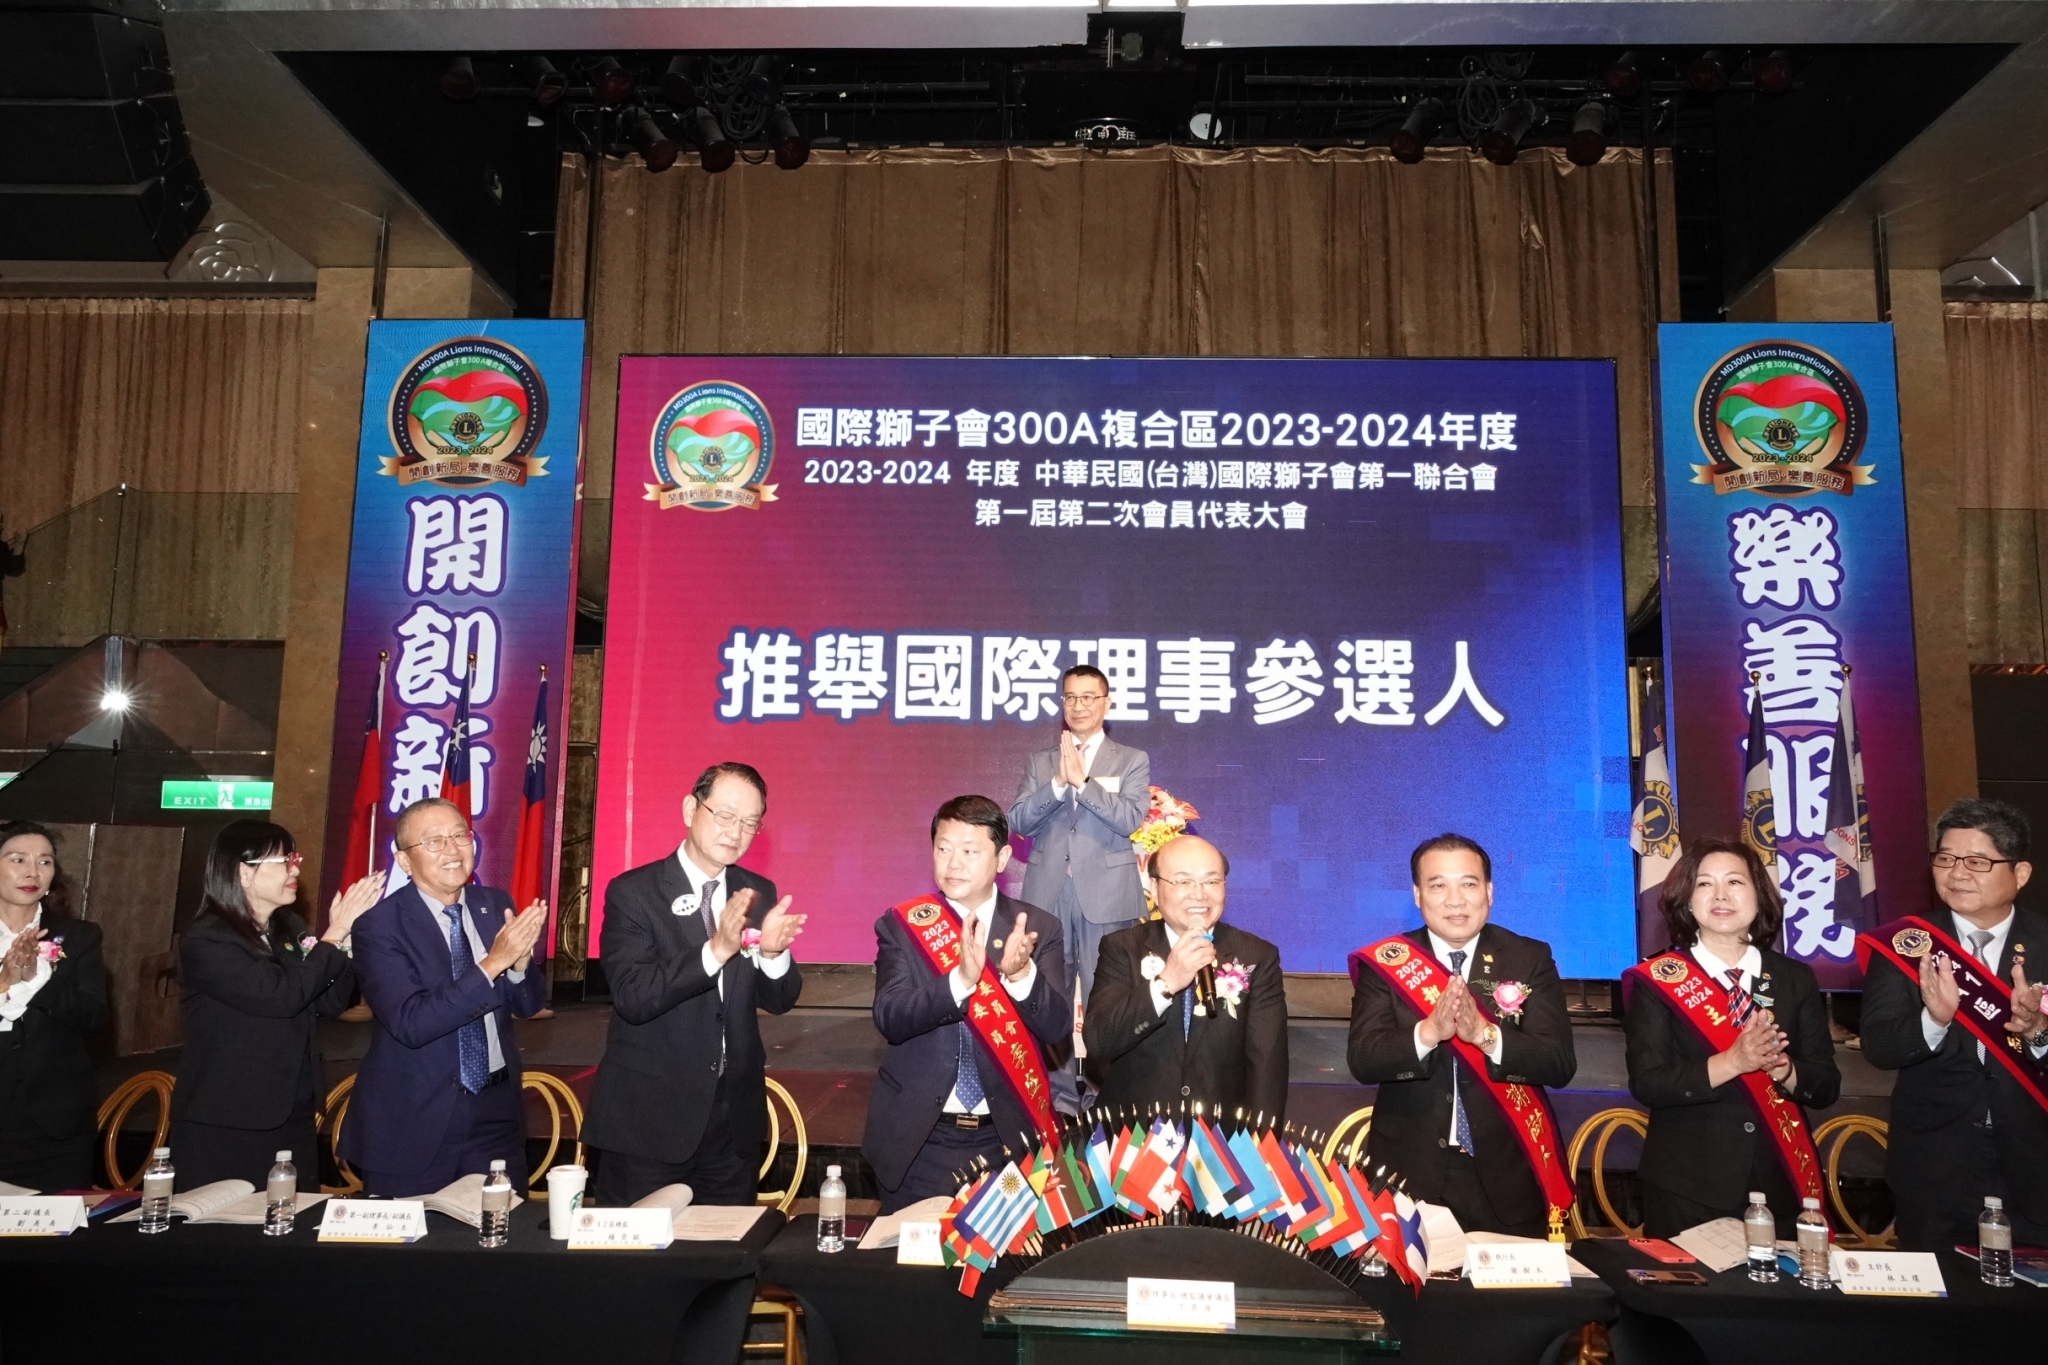 中華民國(台灣)國際獅子會第一聯合會 MD300Ａ TAIWAN 2023-2024年度年會首席代表會議